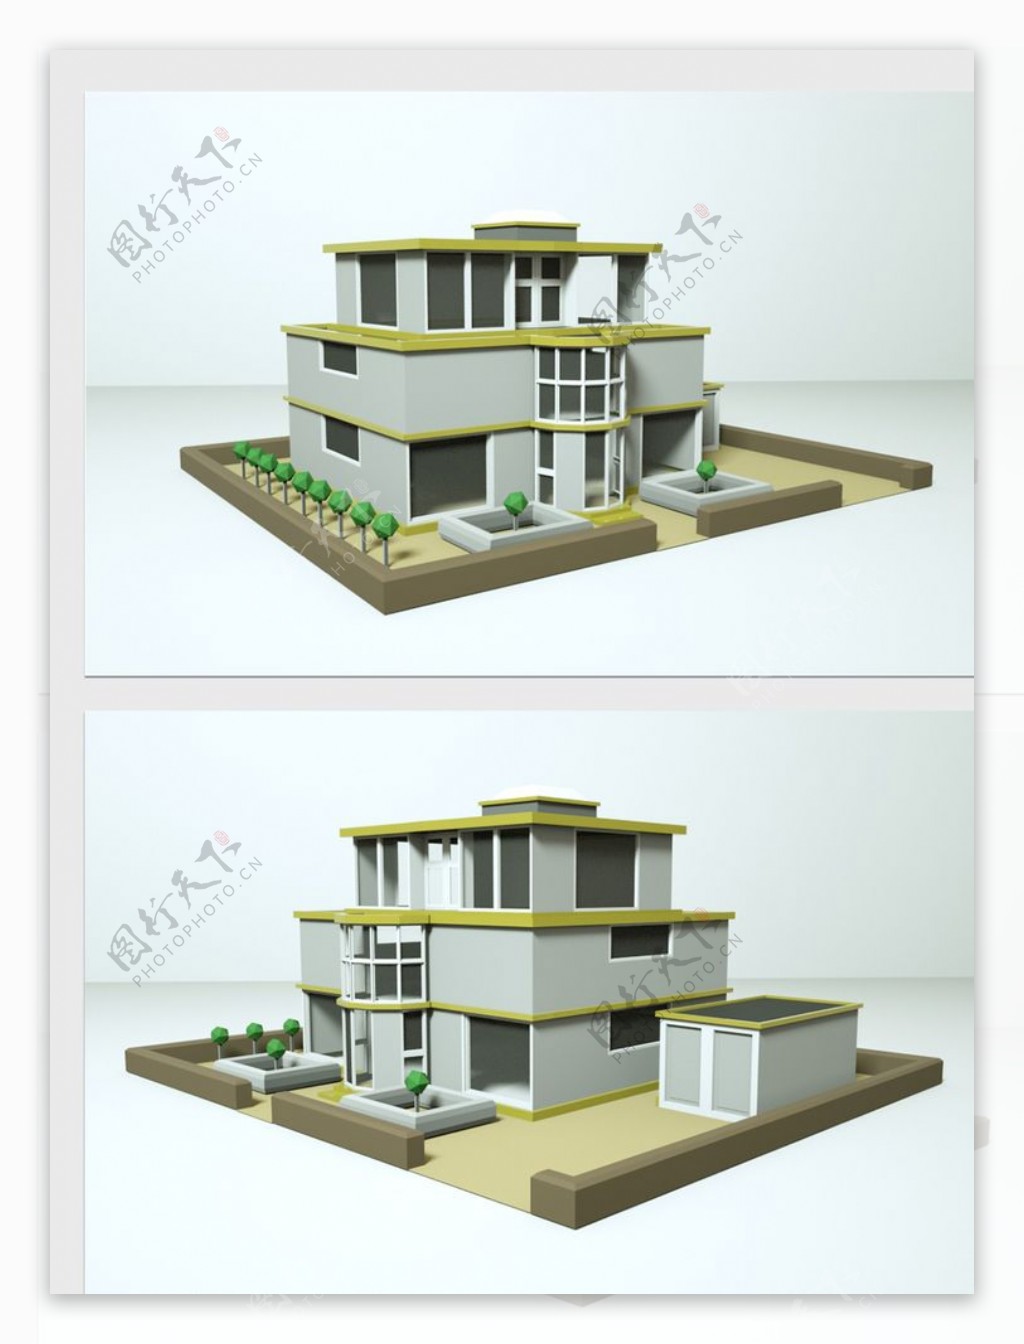 家庭别墅模型图片